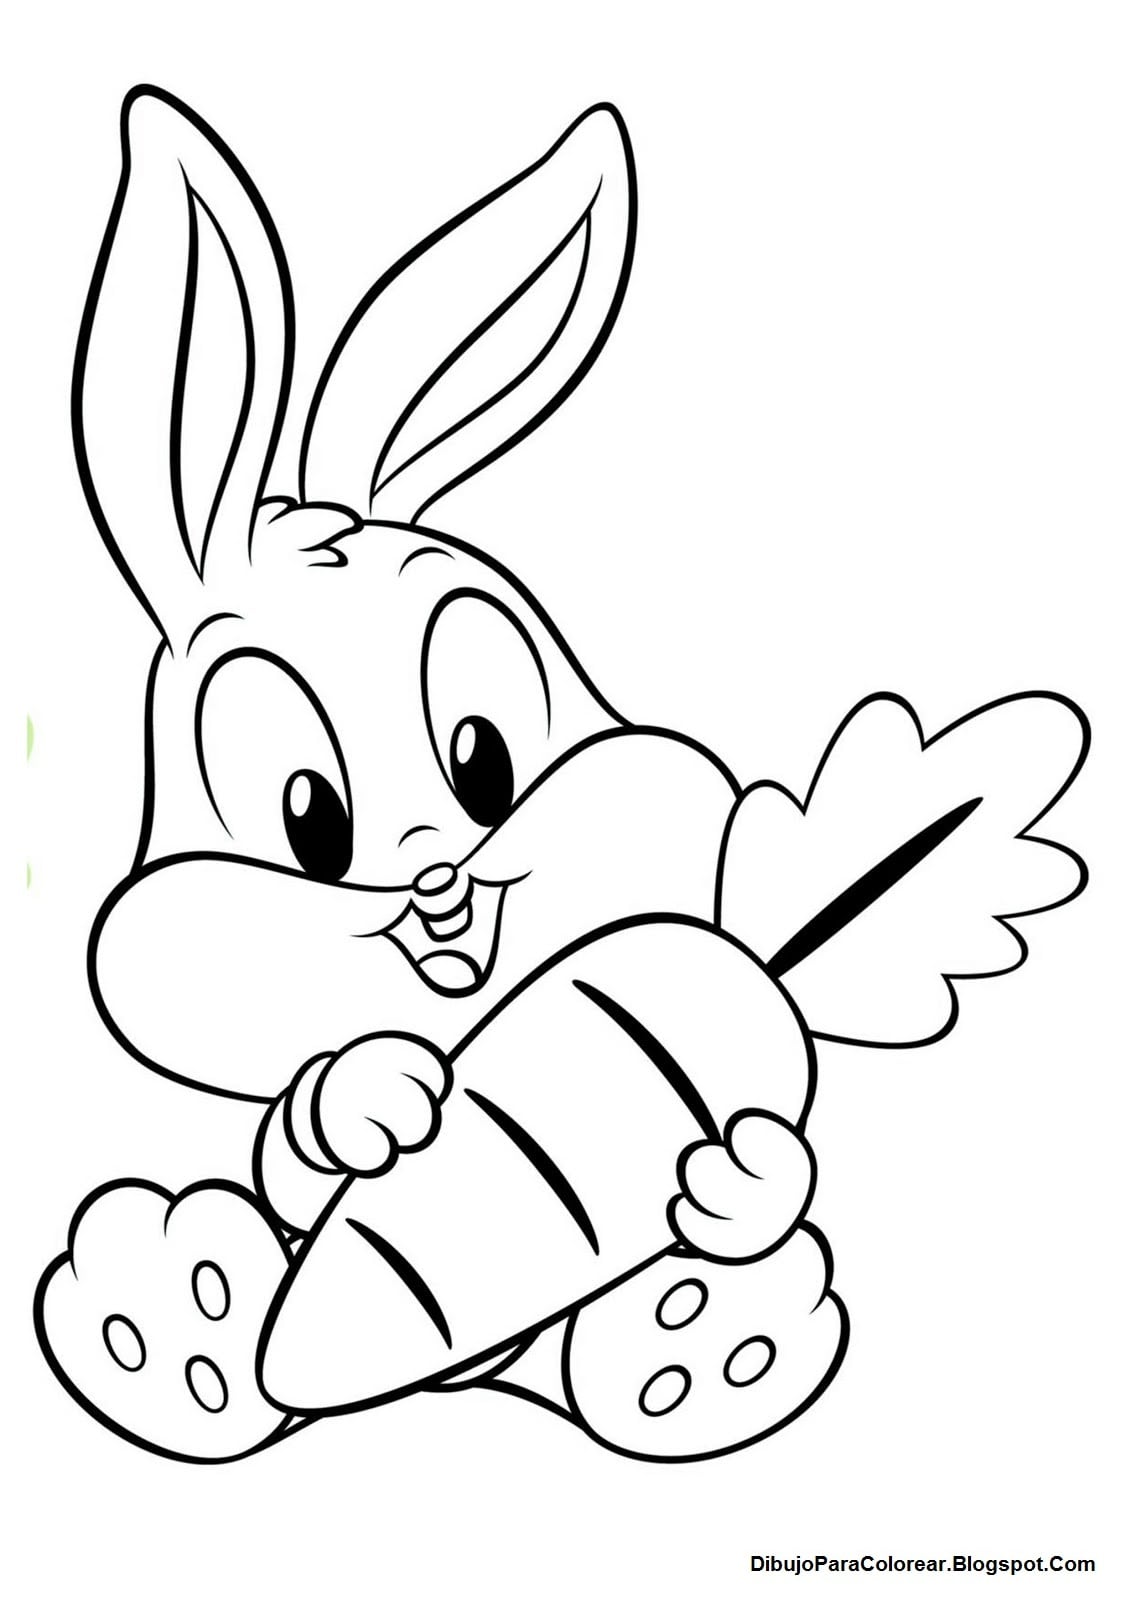 Dibujos Para Colorear  Dibujo Para Colorear Bebe Bugs Bunny